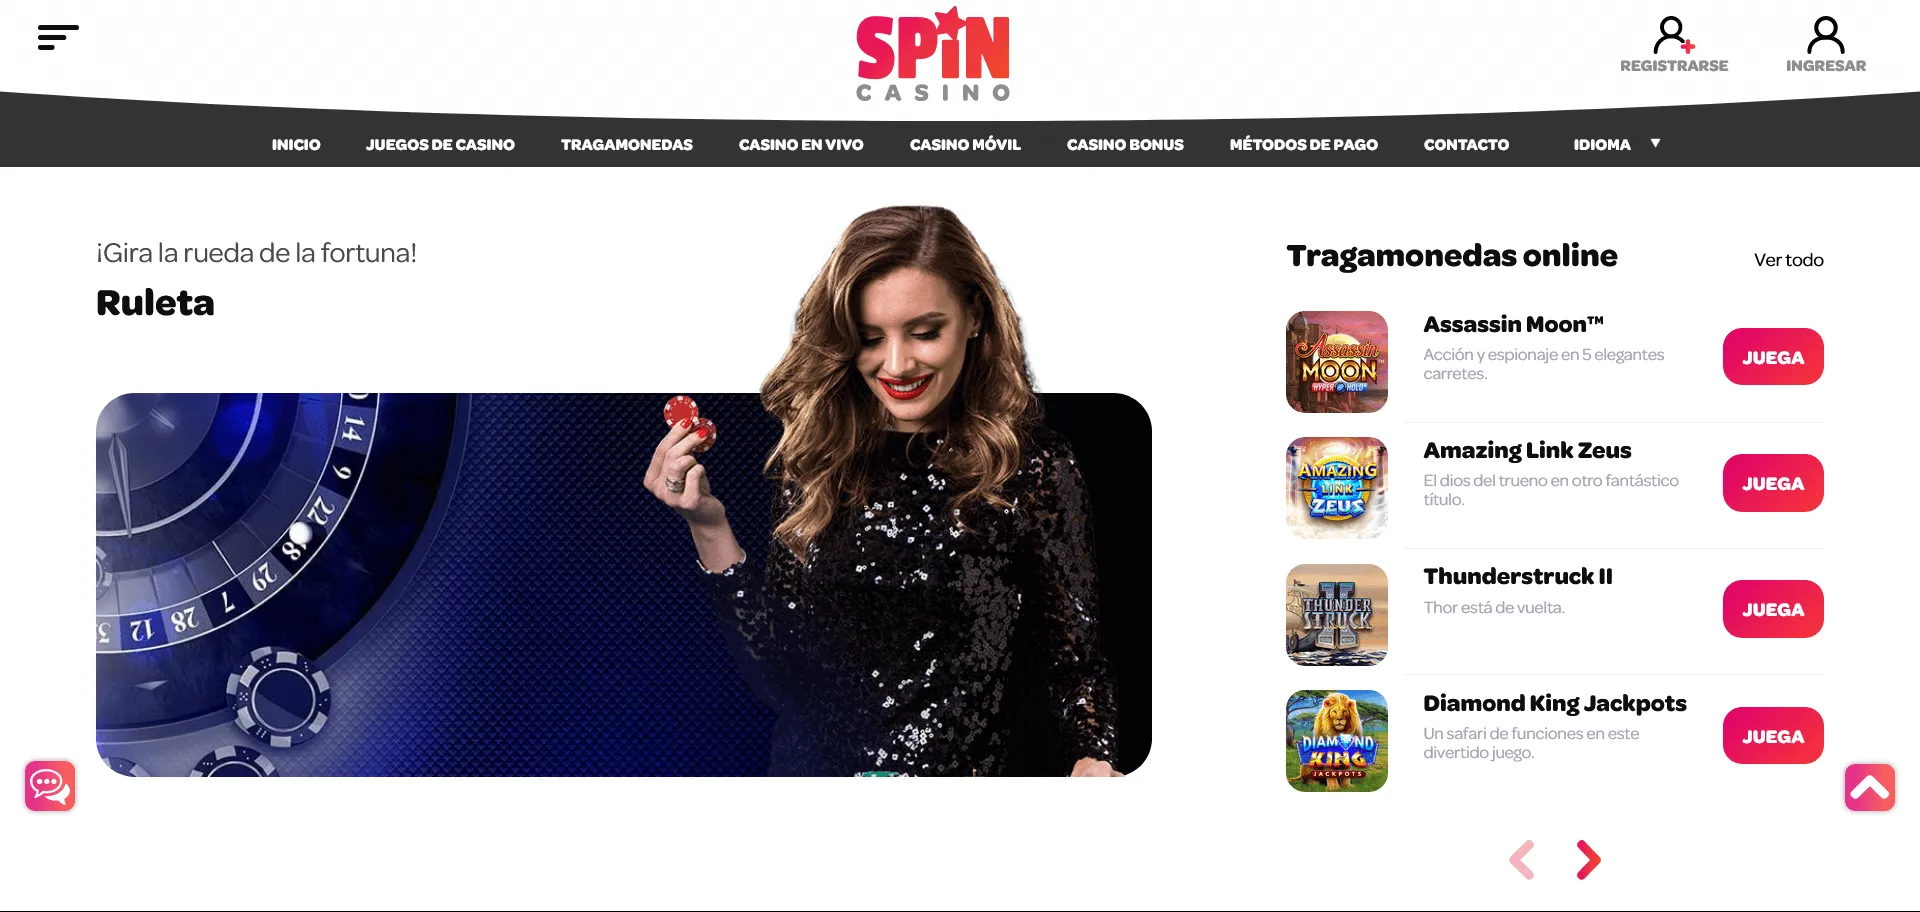 Bonos de bienvenida y promociones en Spin Casino